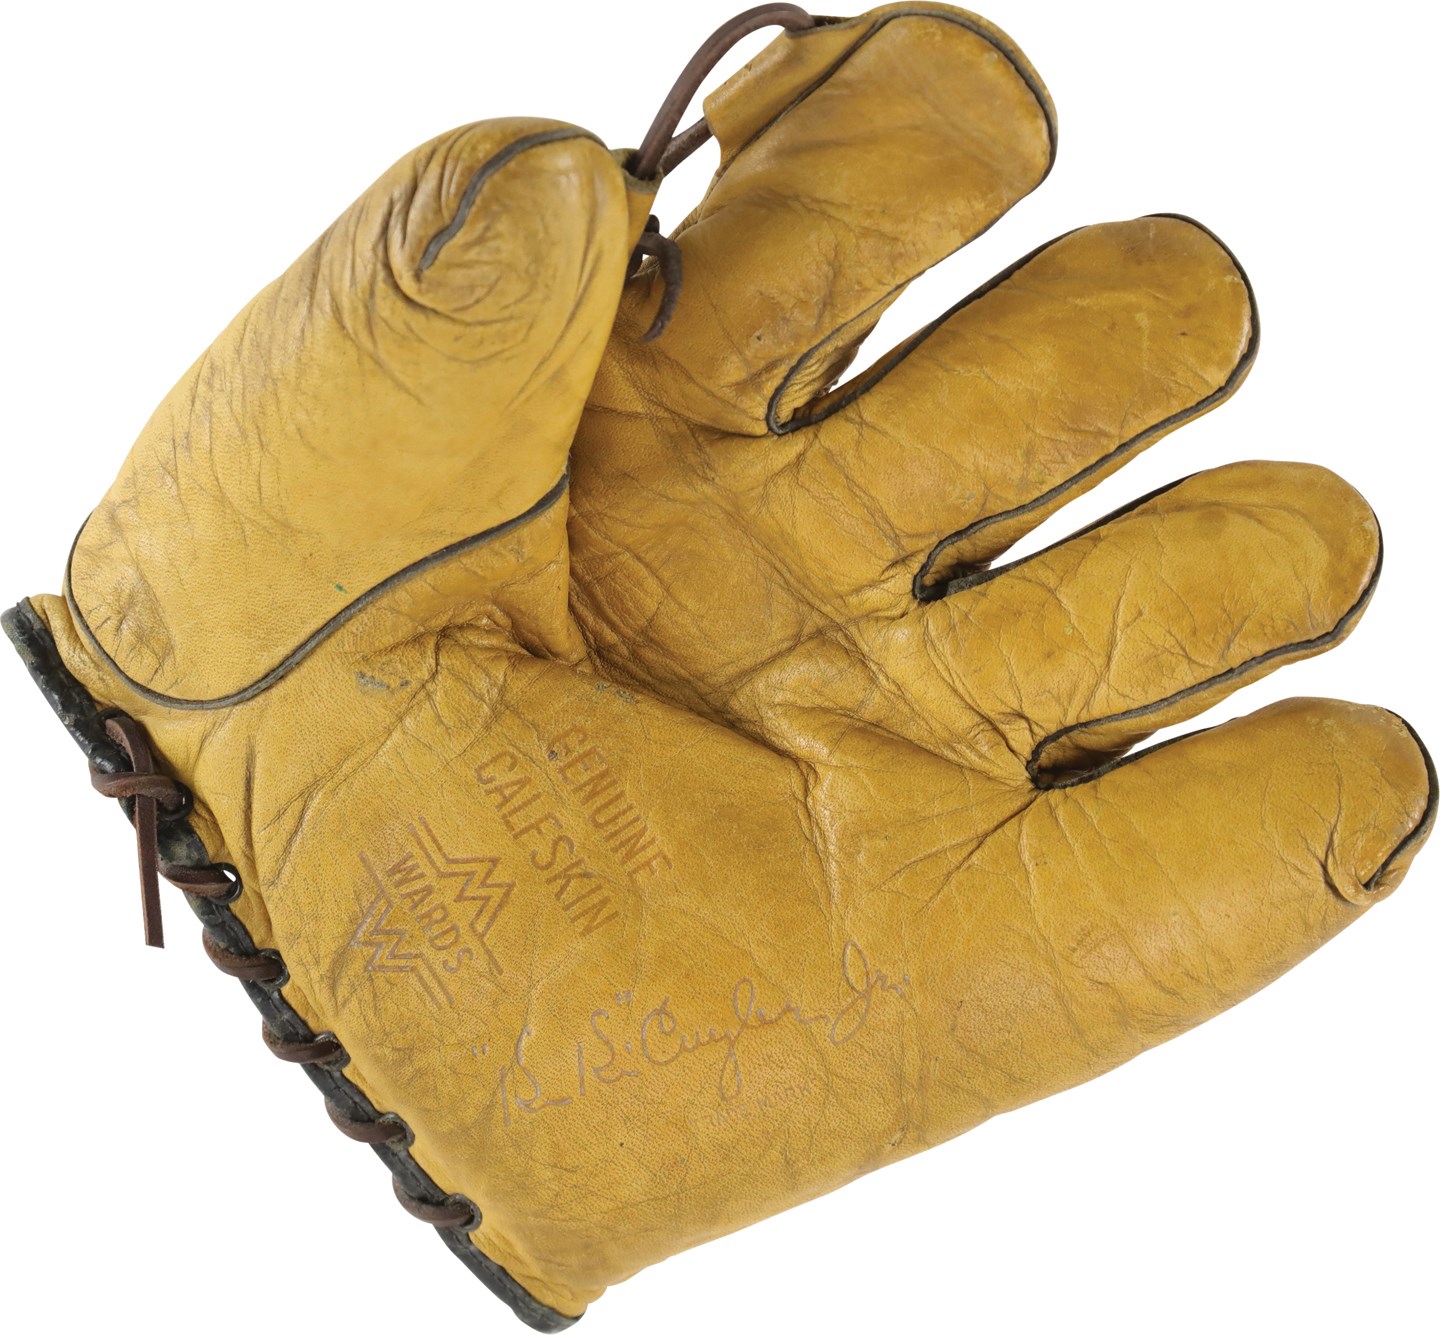 - Rare Kiki Cuyler Signature Model Fielder's Glove